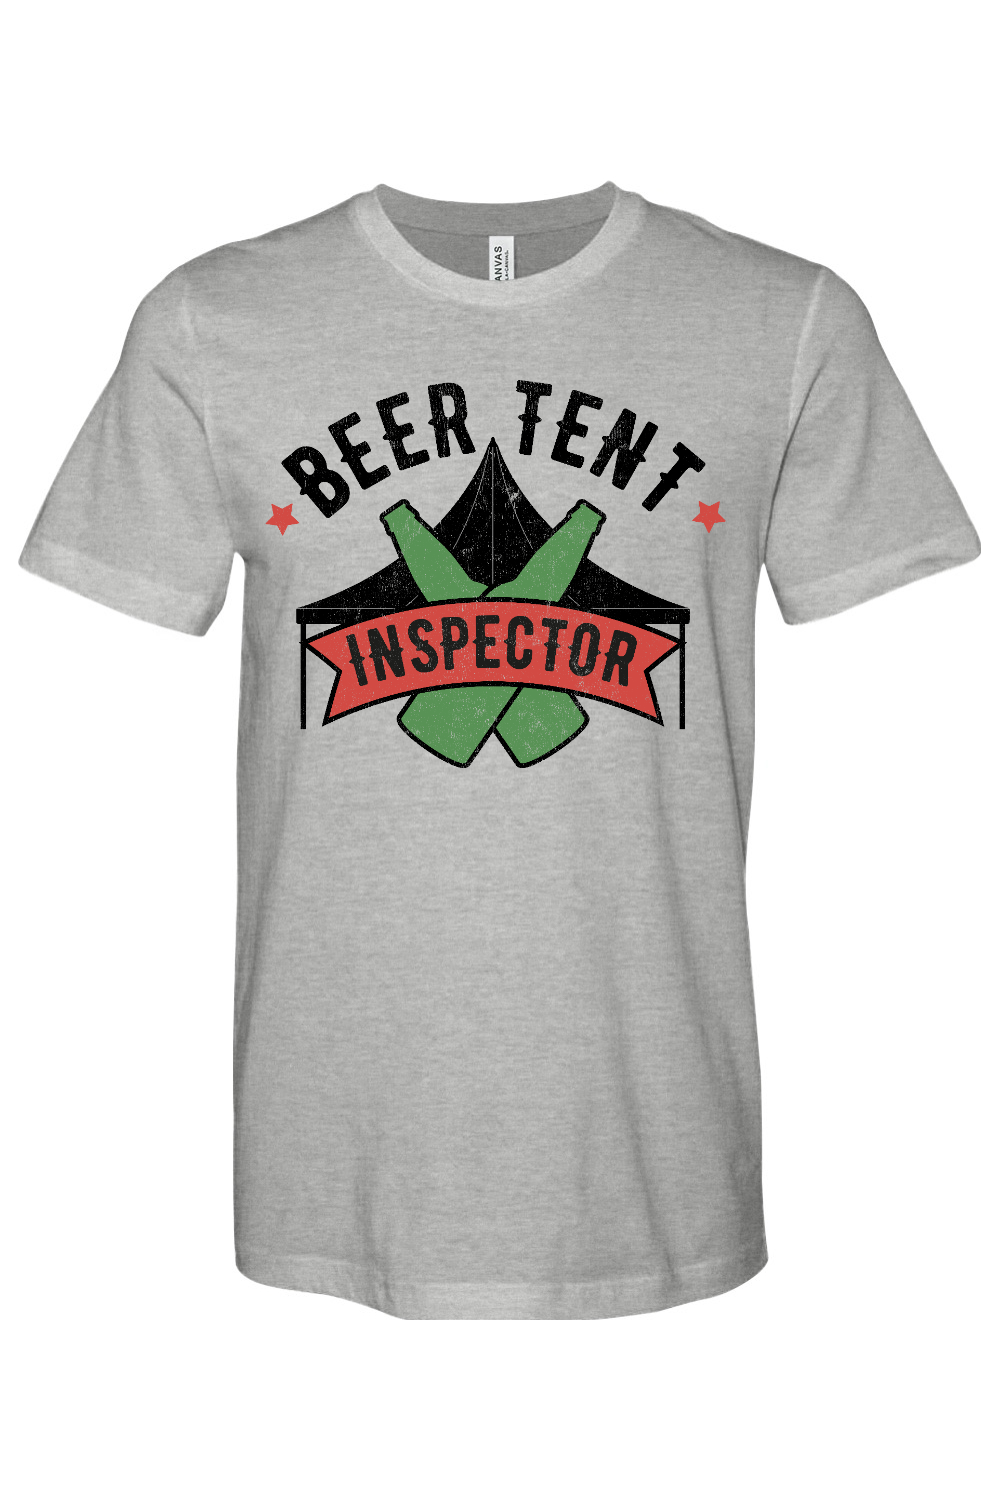 Beer Tent Inspector - Yinzylvania